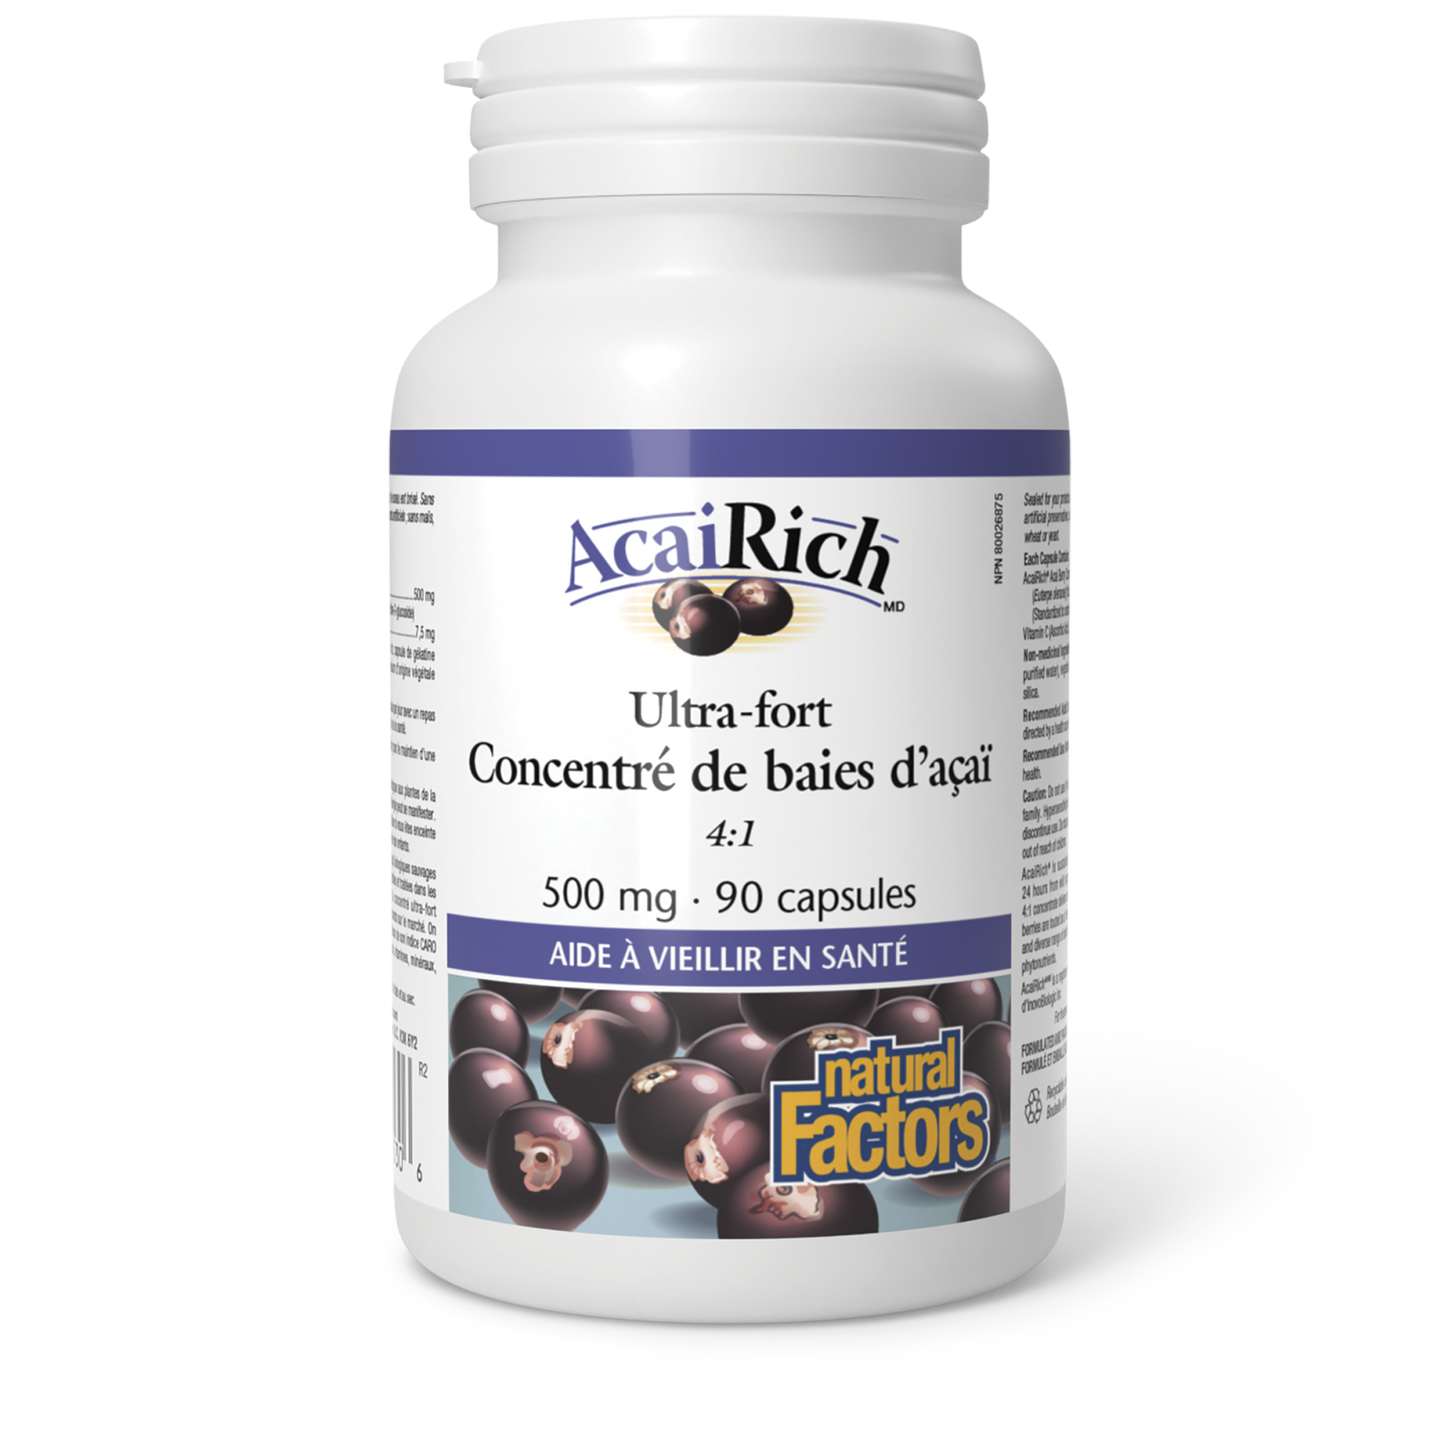 AcaiRich Ultra-fort Concentré de baies d’açaï 500 mg, Natural Factors|v|image|4530